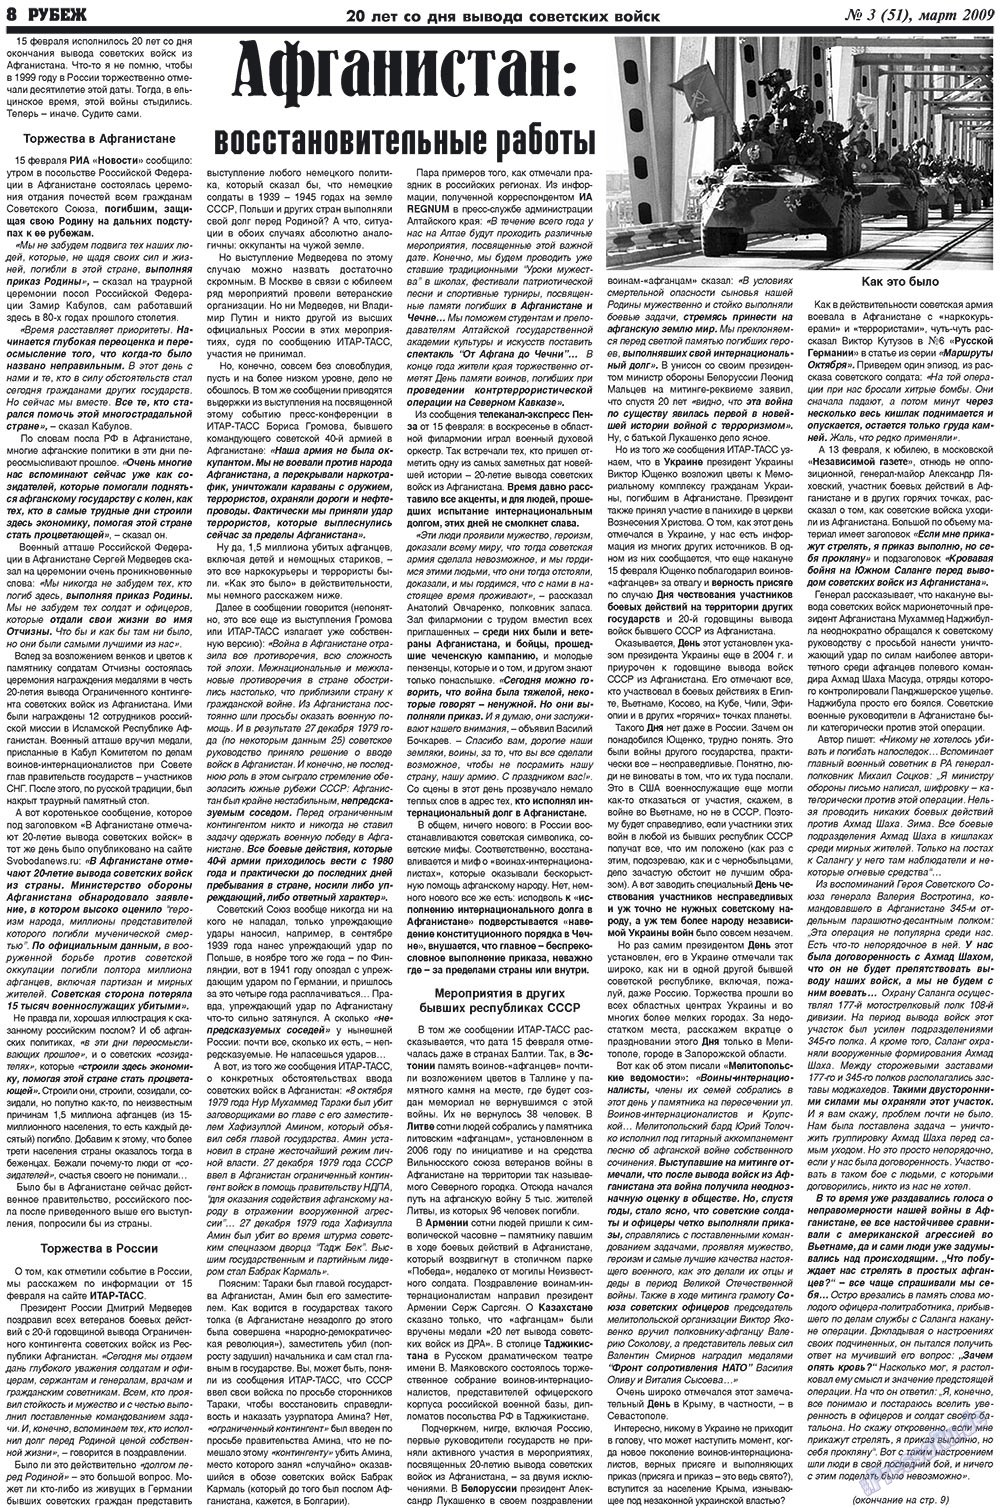 Рубеж (газета). 2009 год, номер 3, стр. 8